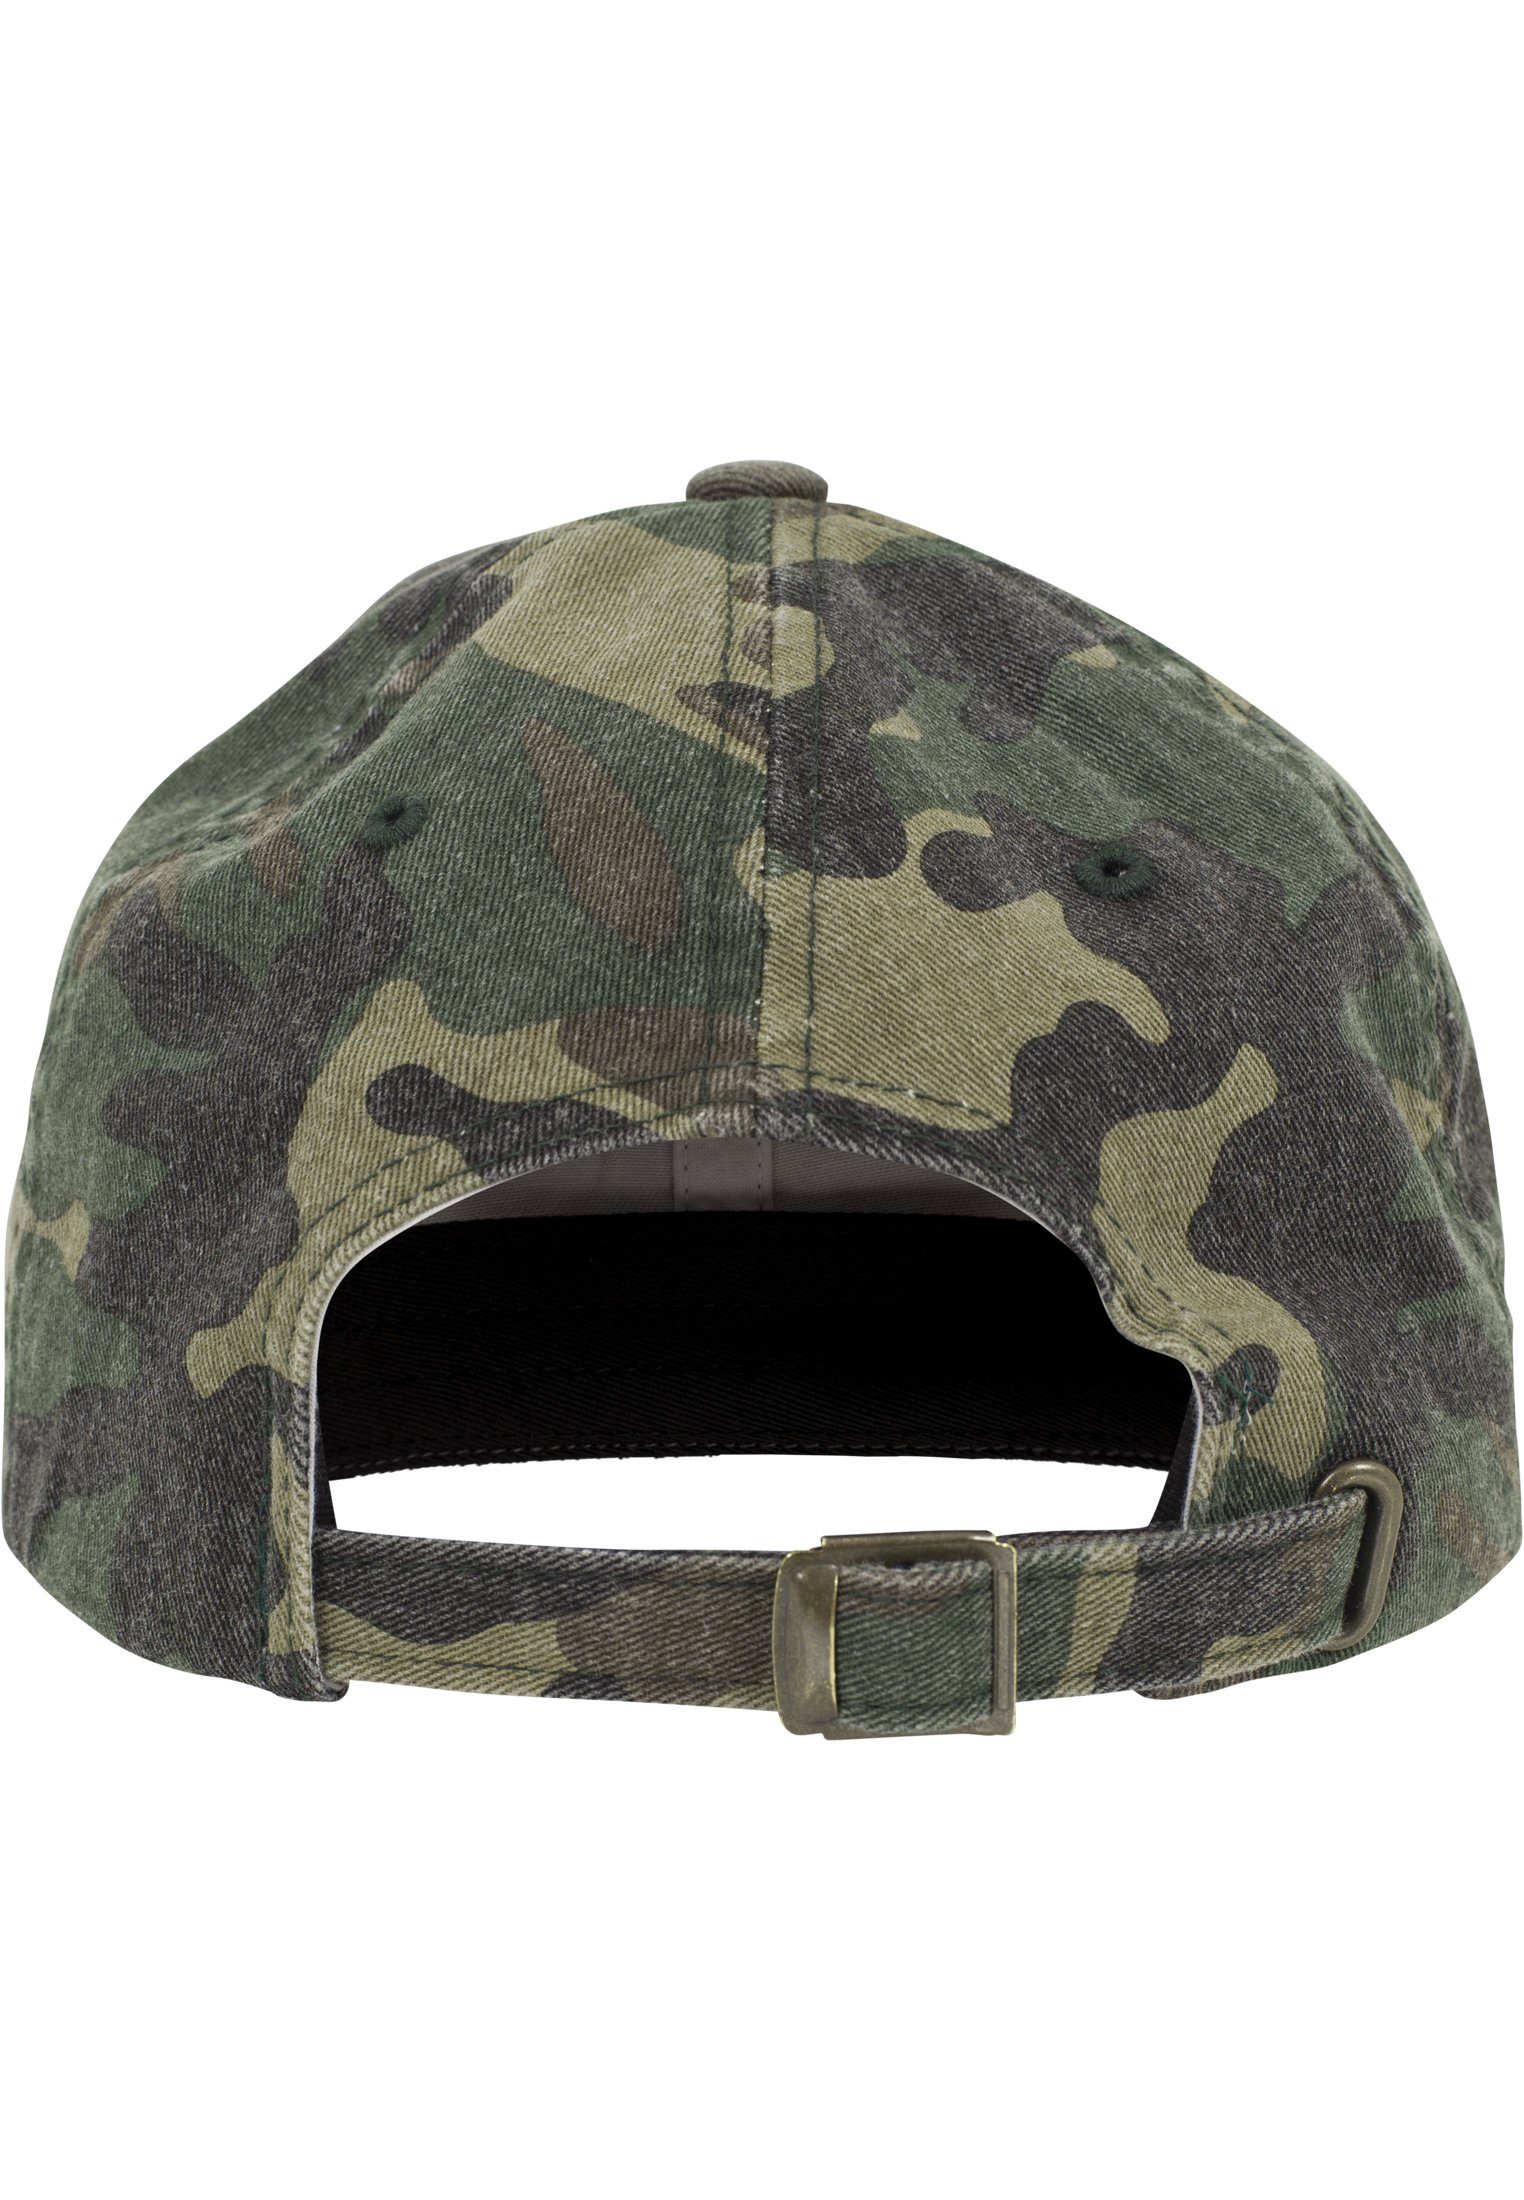 Flex Flexfit Washed Cap woodcamouflage Accessoires Profile Camo Low Cap